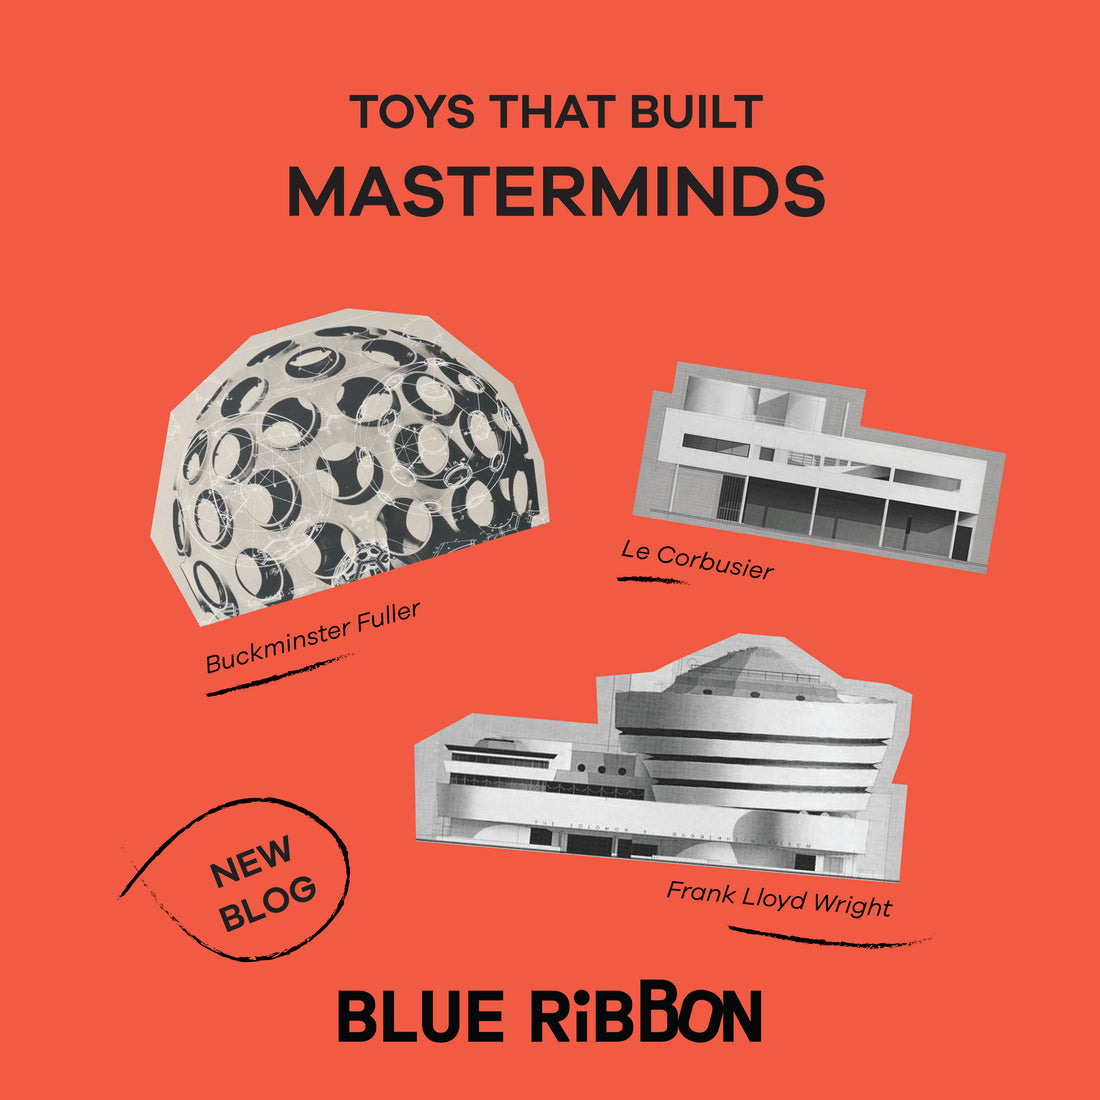 3 ของเล่นไม้ได้รับแรงบันดาลใจมาจากนักคิด นักประดิษฐ์ และสถาปนิกในตำนาน Frank Lloyd Wright, Buck Minster Fuller, Le Corbusier